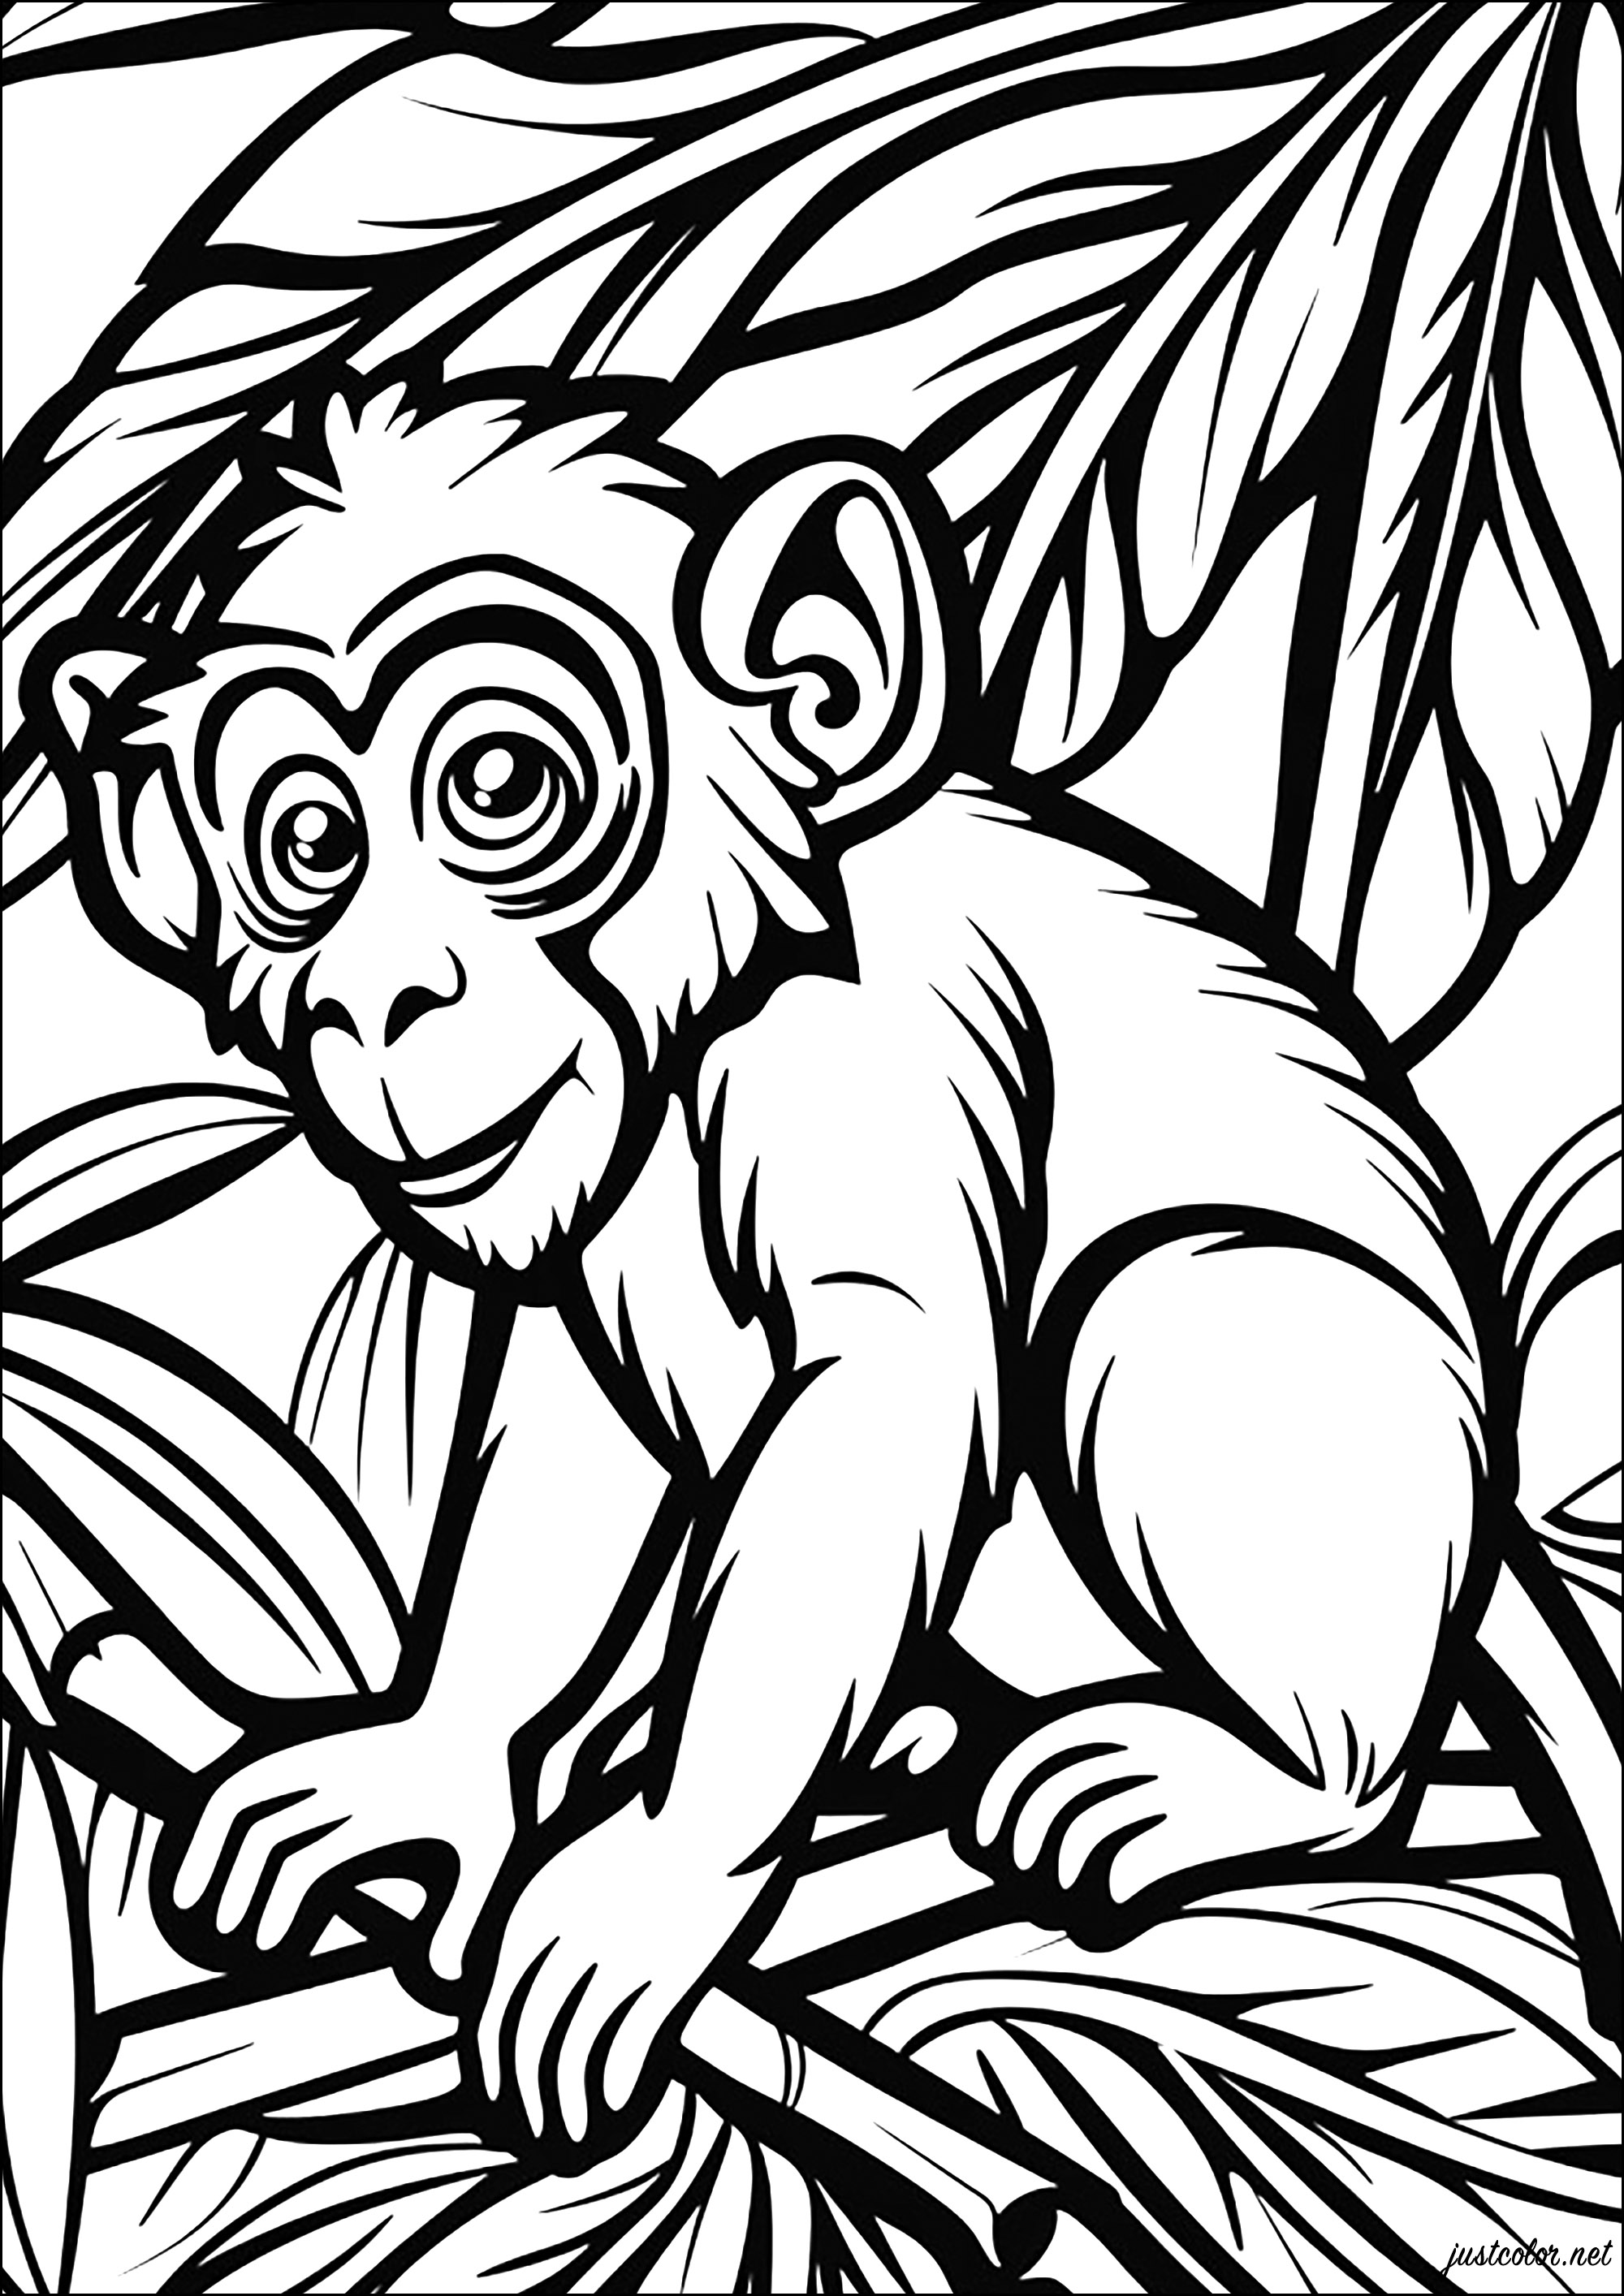 Petit singe dans la jungle. Un coloriage aux lignes très épaisses, qui vous transportera dans la jungle !